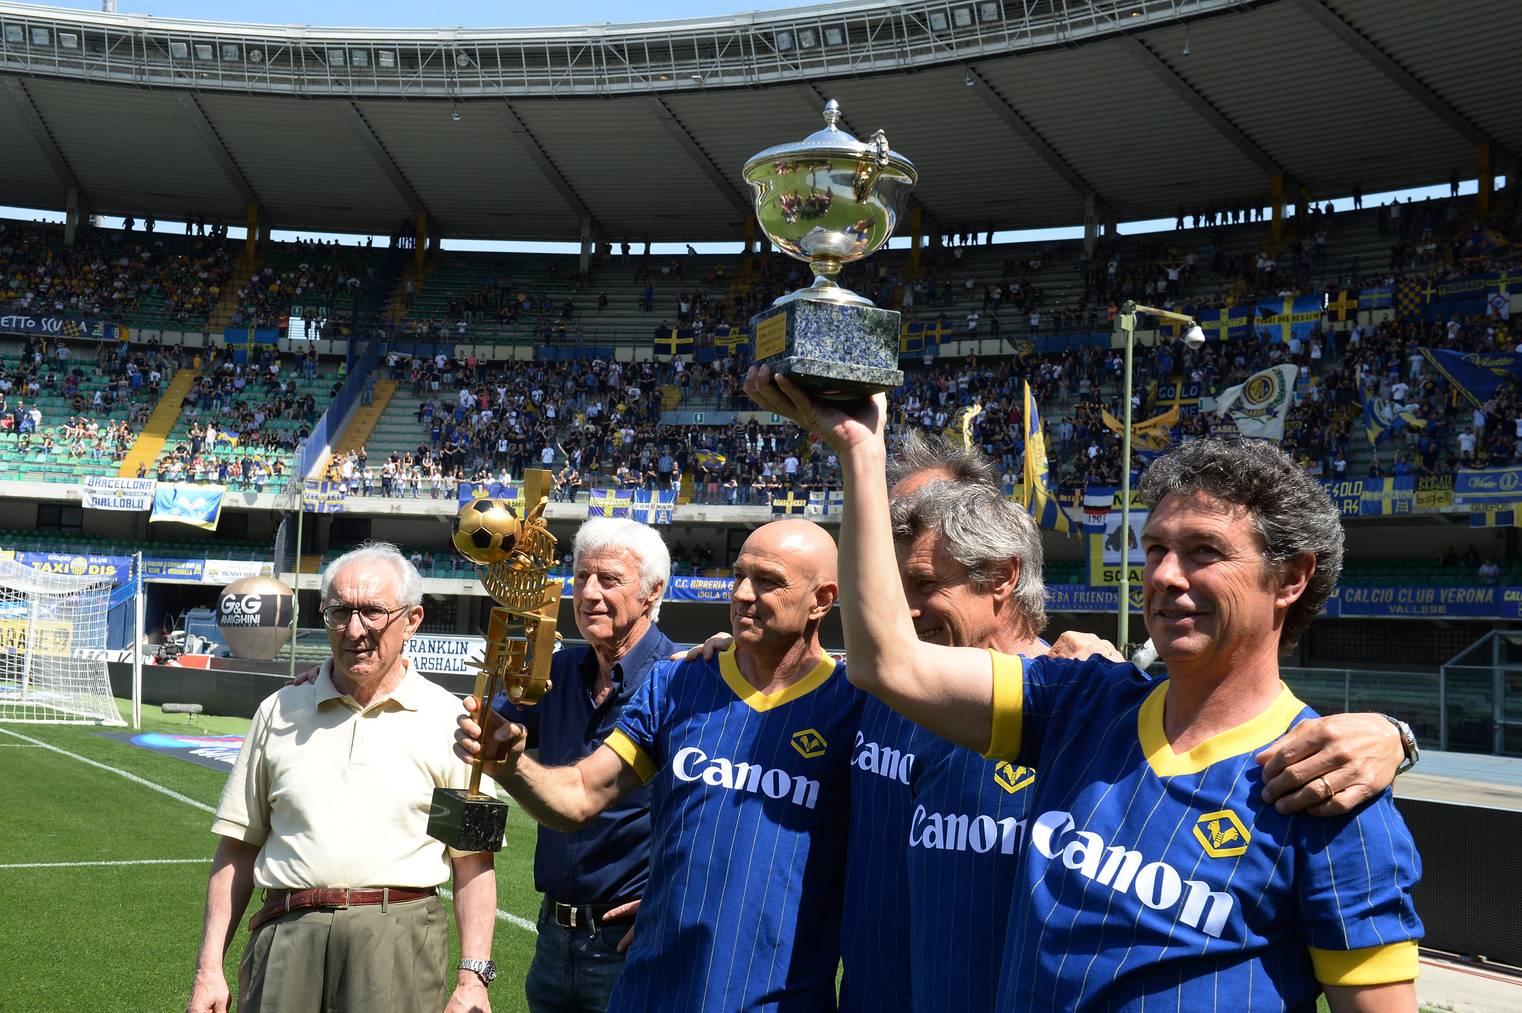 Der damalige Trainer Eugenio Bagnoli und einige seiner Spieler feiern das 30-Jahr-Jubiläum des Titels.